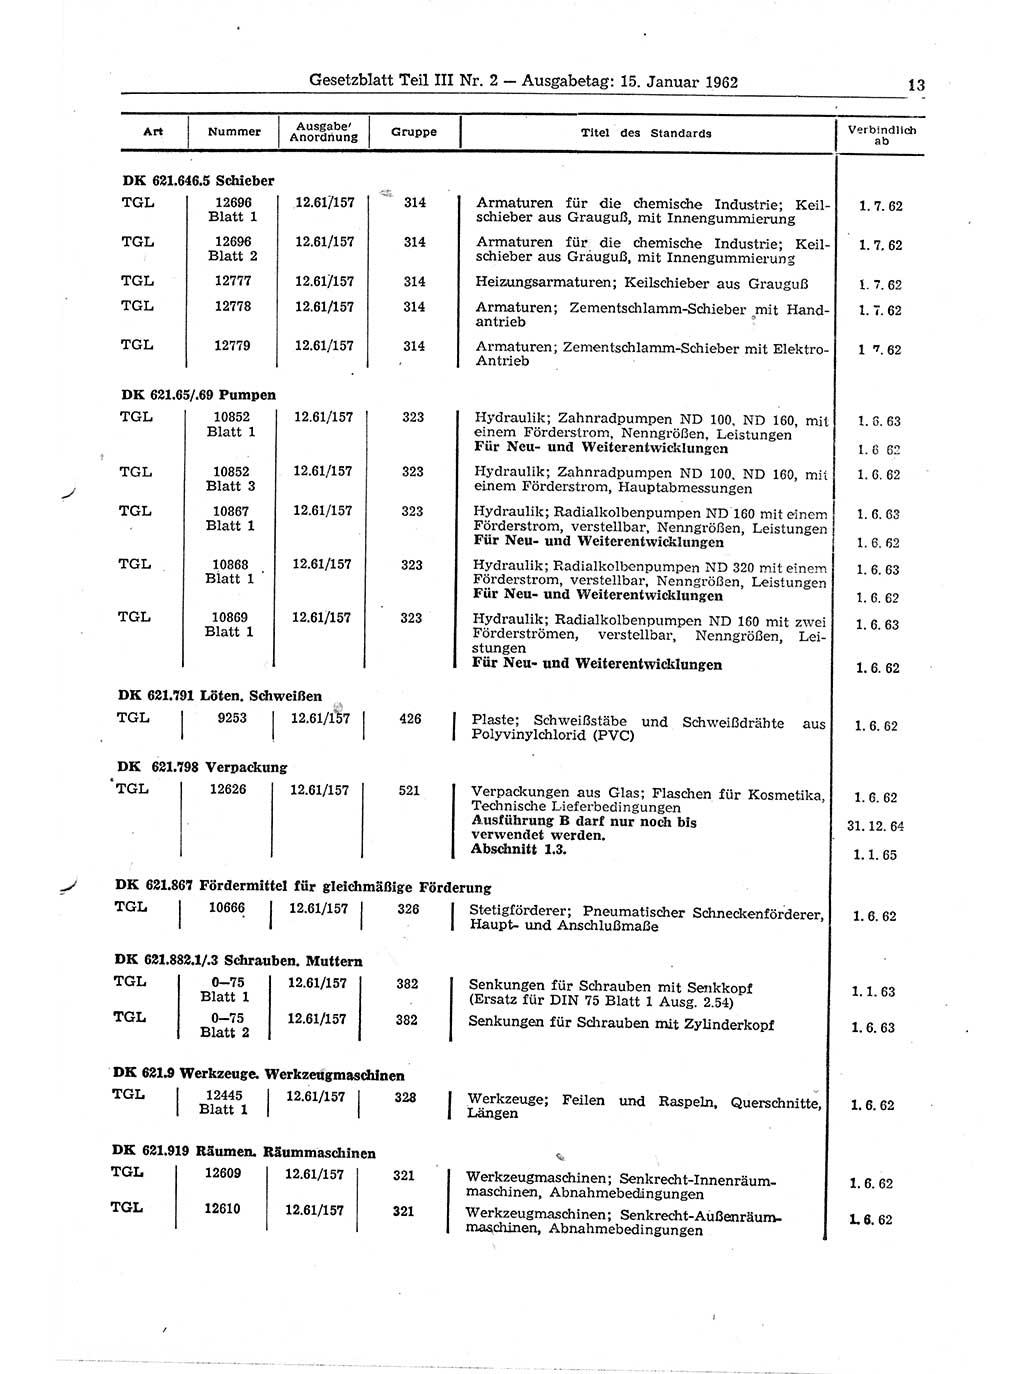 Gesetzblatt (GBl.) der Deutschen Demokratischen Republik (DDR) Teil ⅠⅠⅠ 1962, Seite 13 (GBl. DDR ⅠⅠⅠ 1962, S. 13)